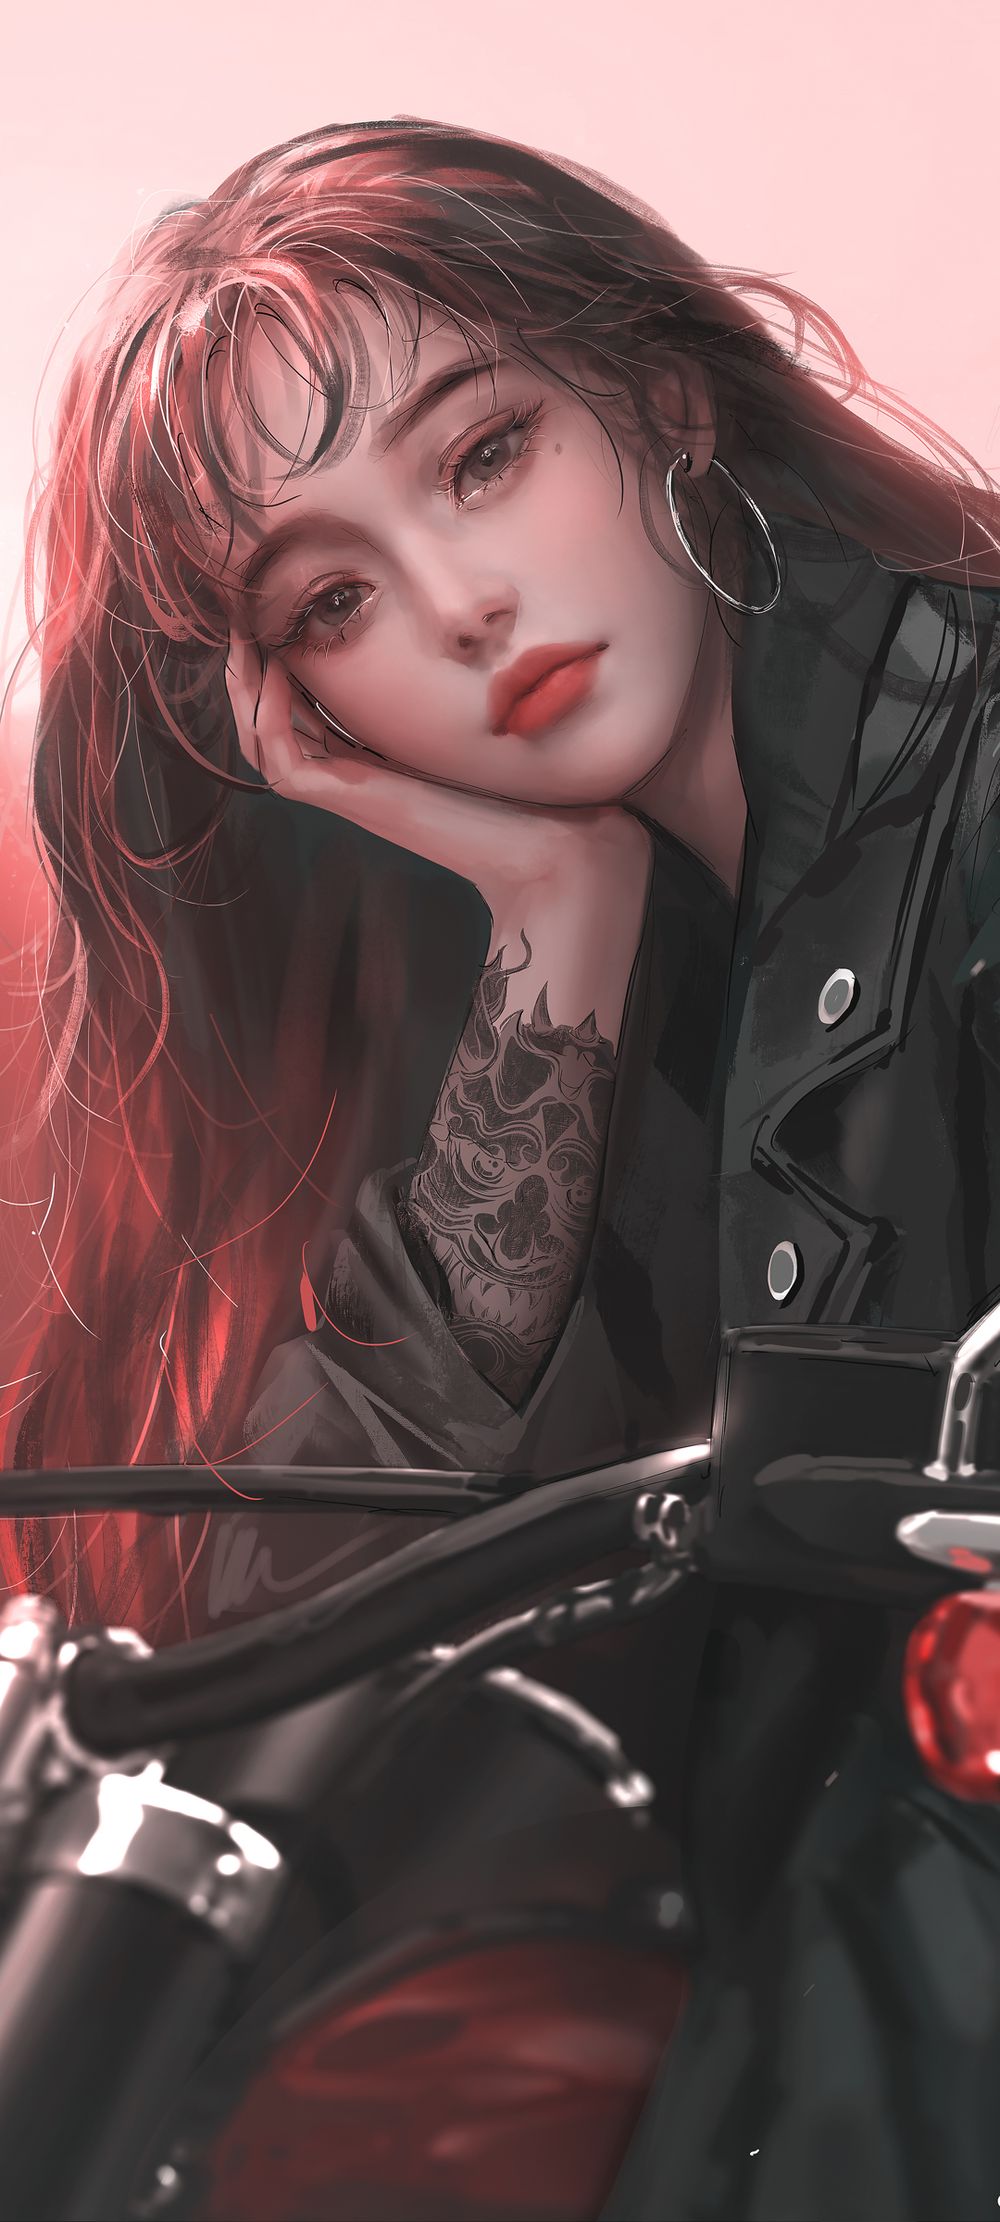 长发美女黑色皮衣摩托车主题手绘风格